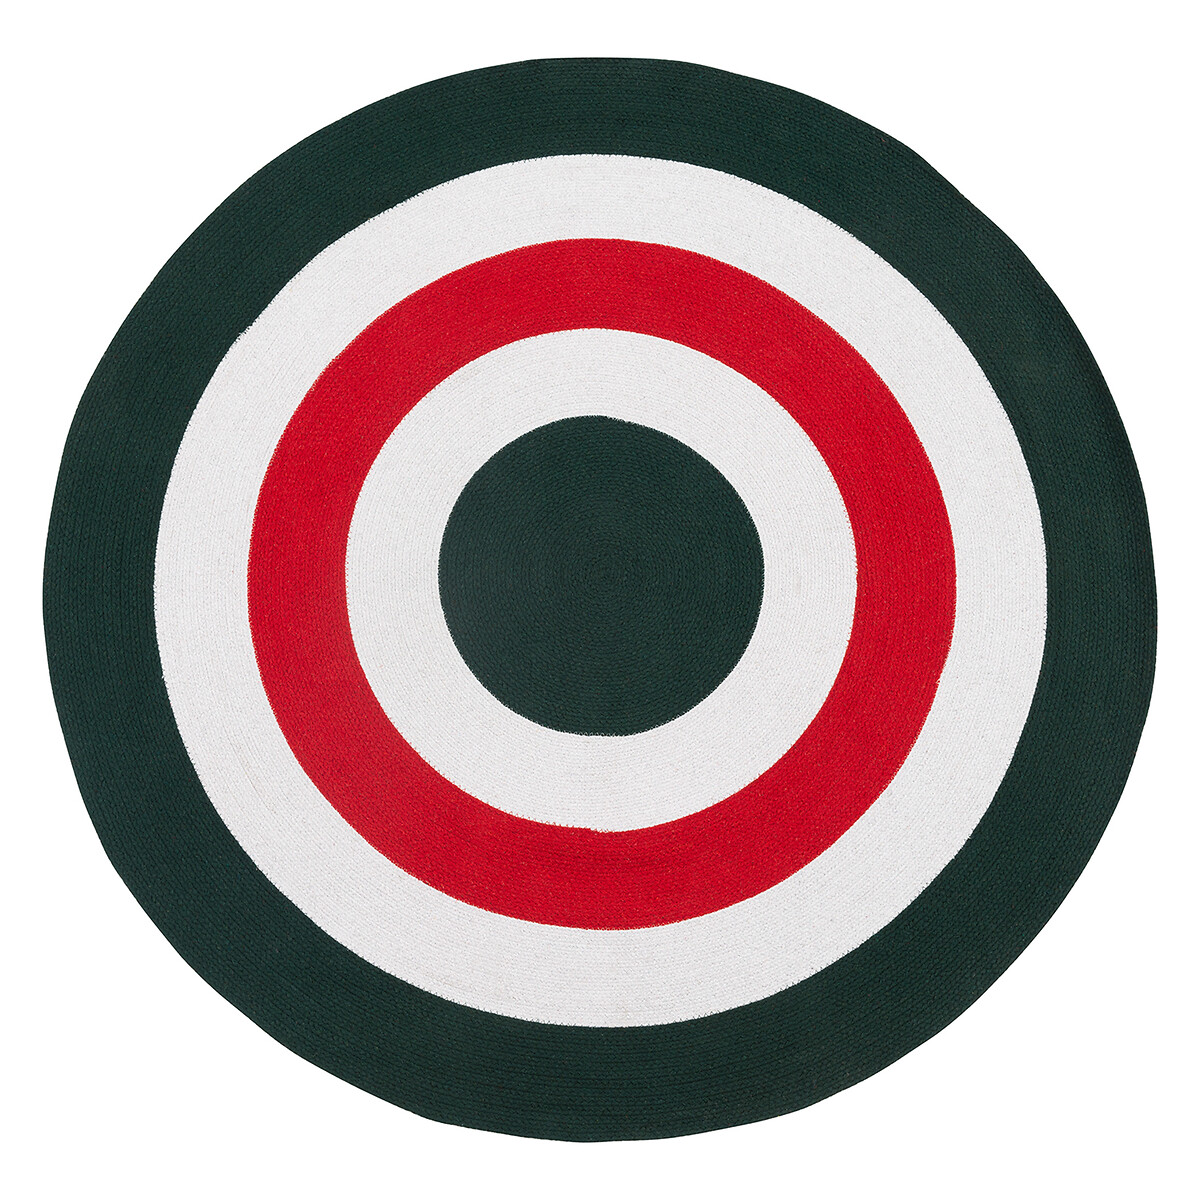 Ковер Из хлопка Target 120 x 120 см зеленый LaRedoute, размер 120 x 120 см - фото 1